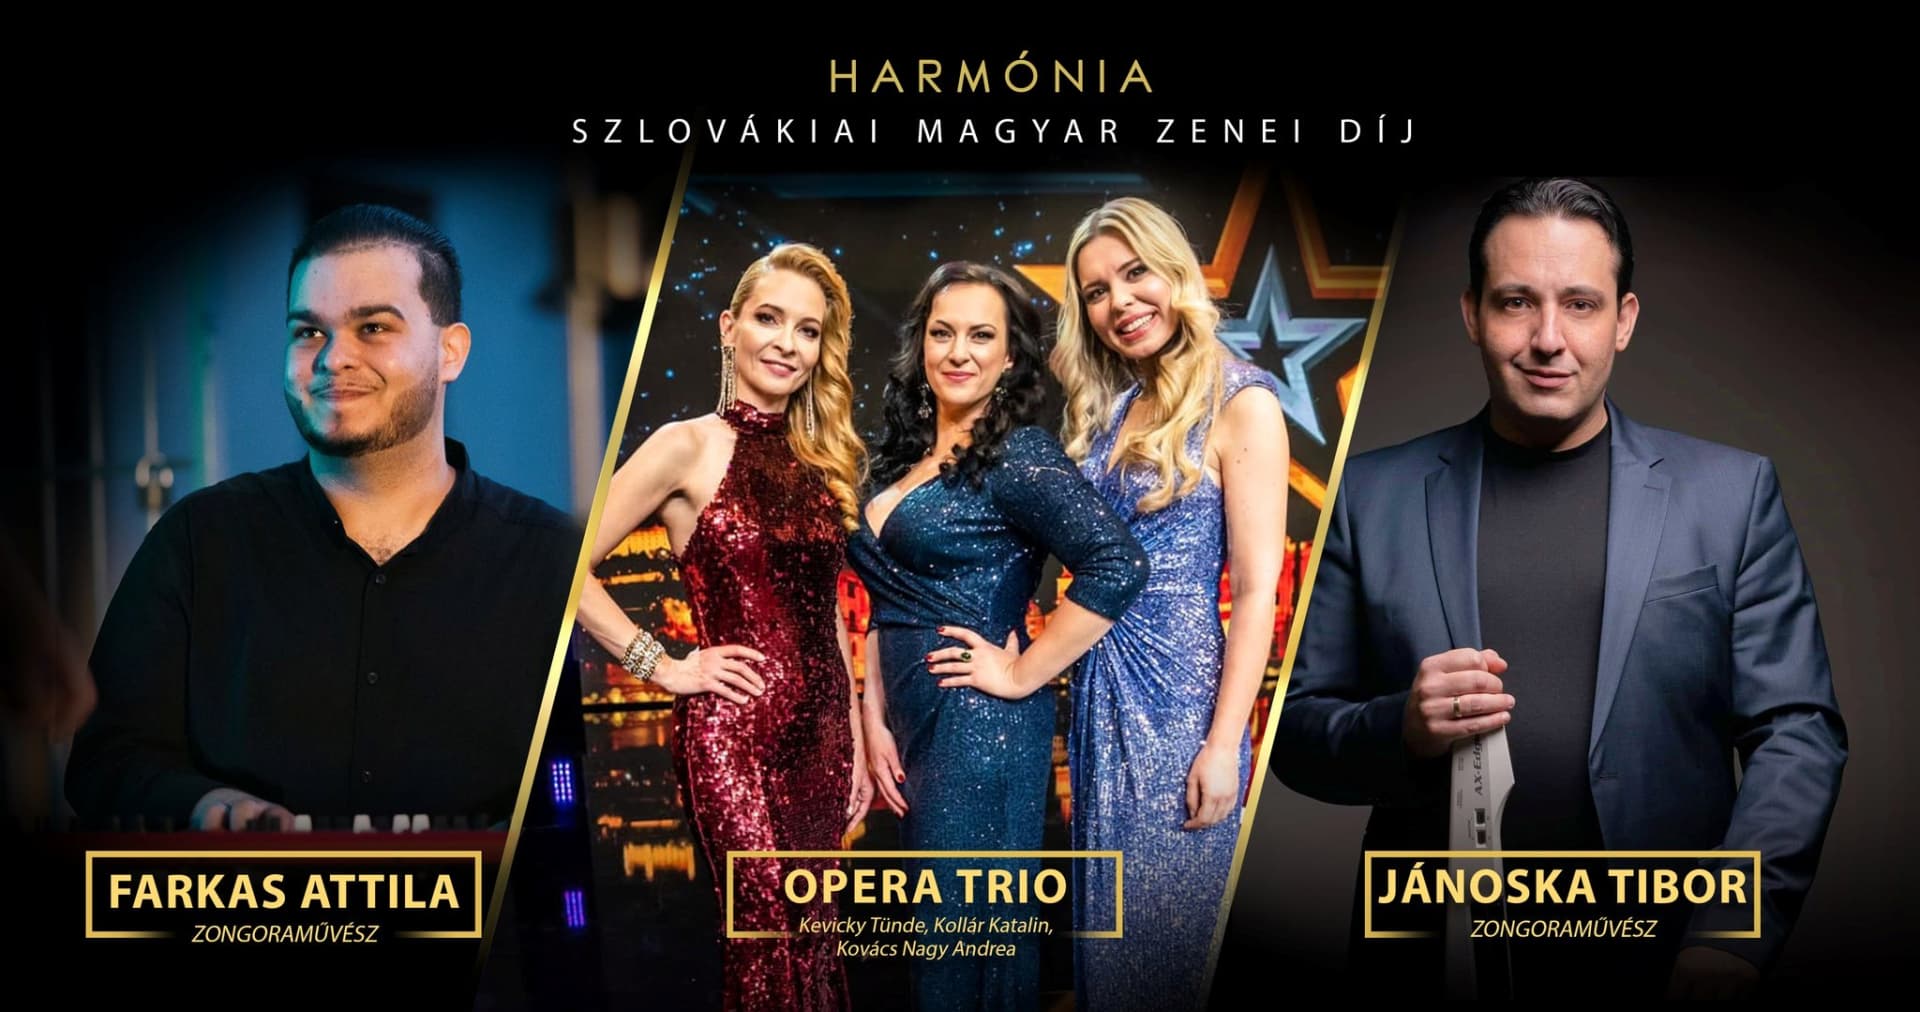 Az Opera Trio nyerte az idei Harmónia-díjat, Jánoska Tibor közönségdíjas